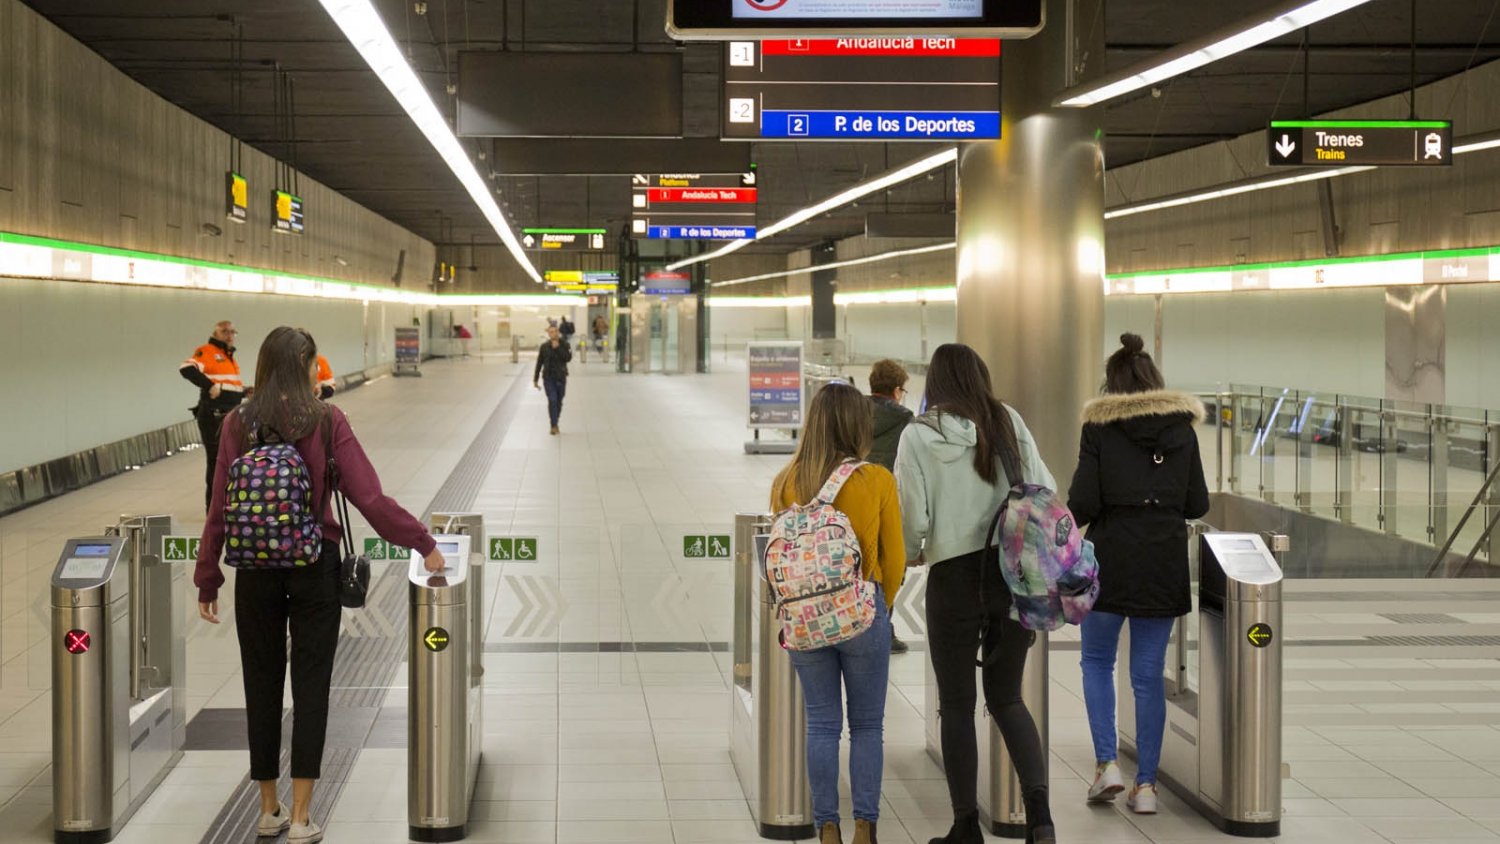 El proyecto para ejecutar las instalaciones de Metro Málaga, valorado en 33,6 millones, recibe 14 ofertas de empresas